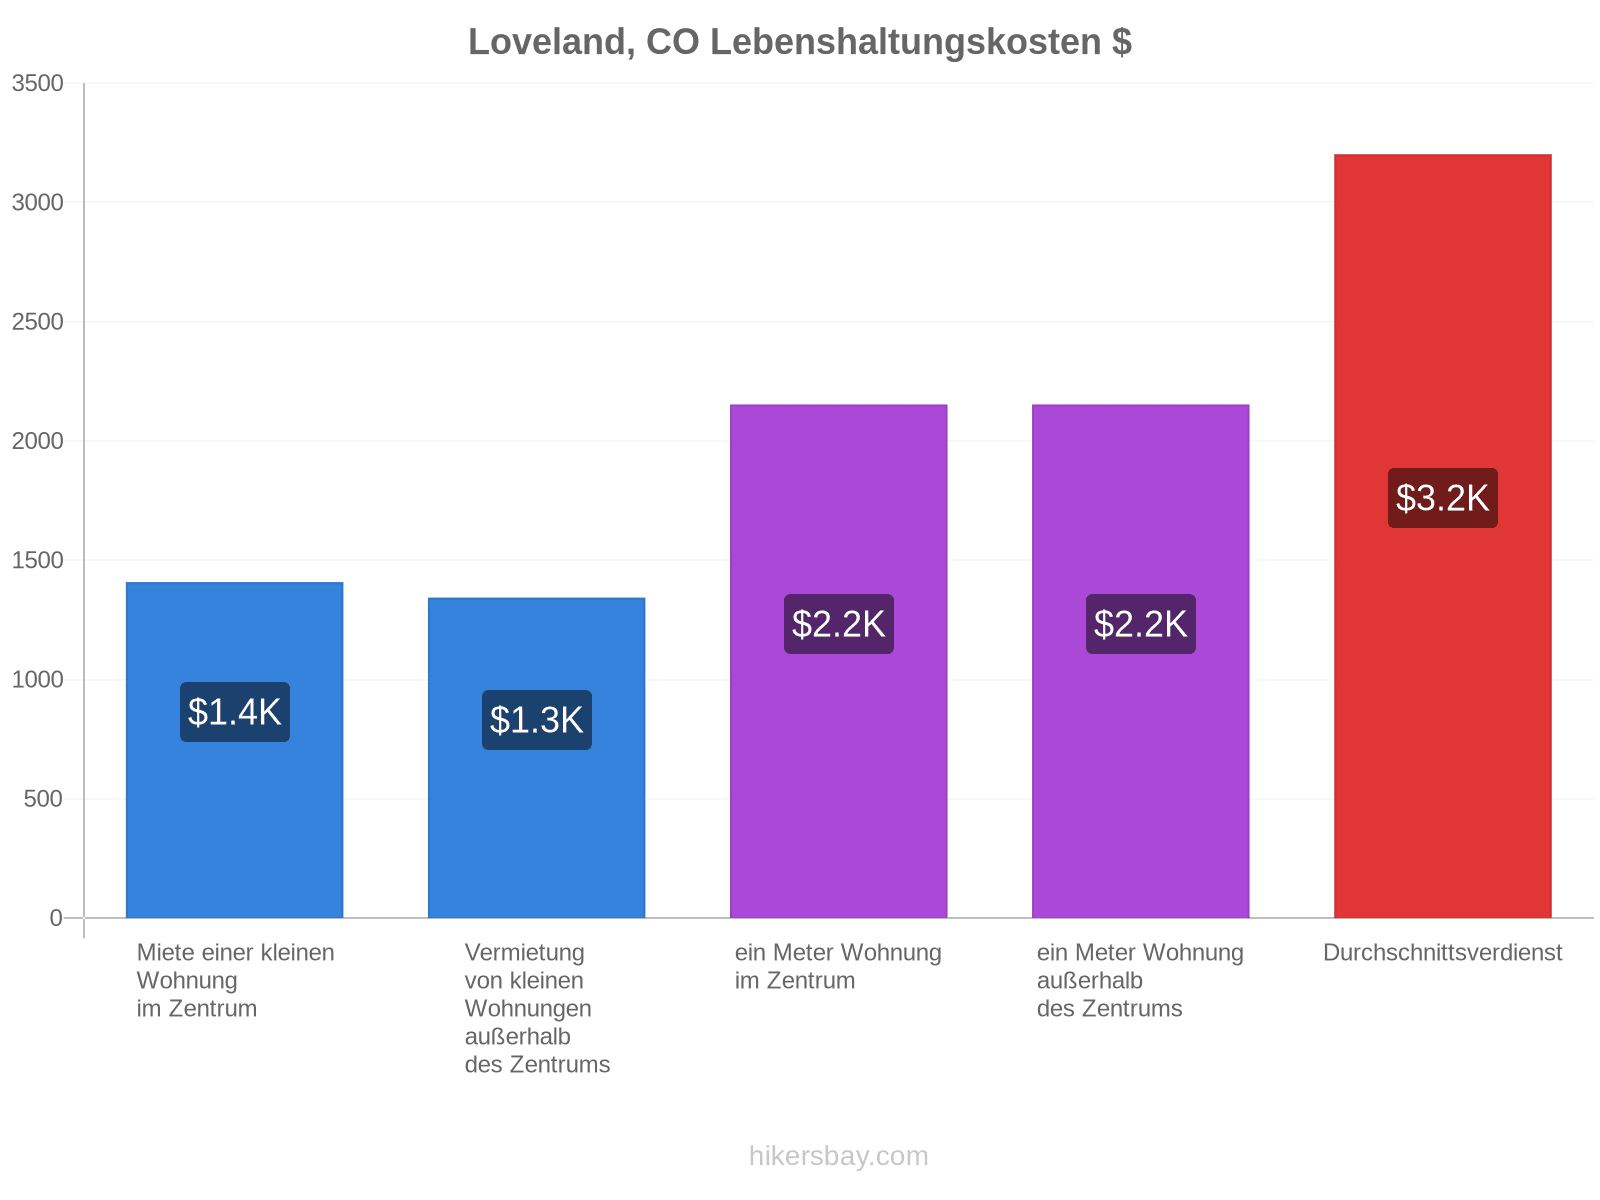 Loveland, CO Lebenshaltungskosten hikersbay.com